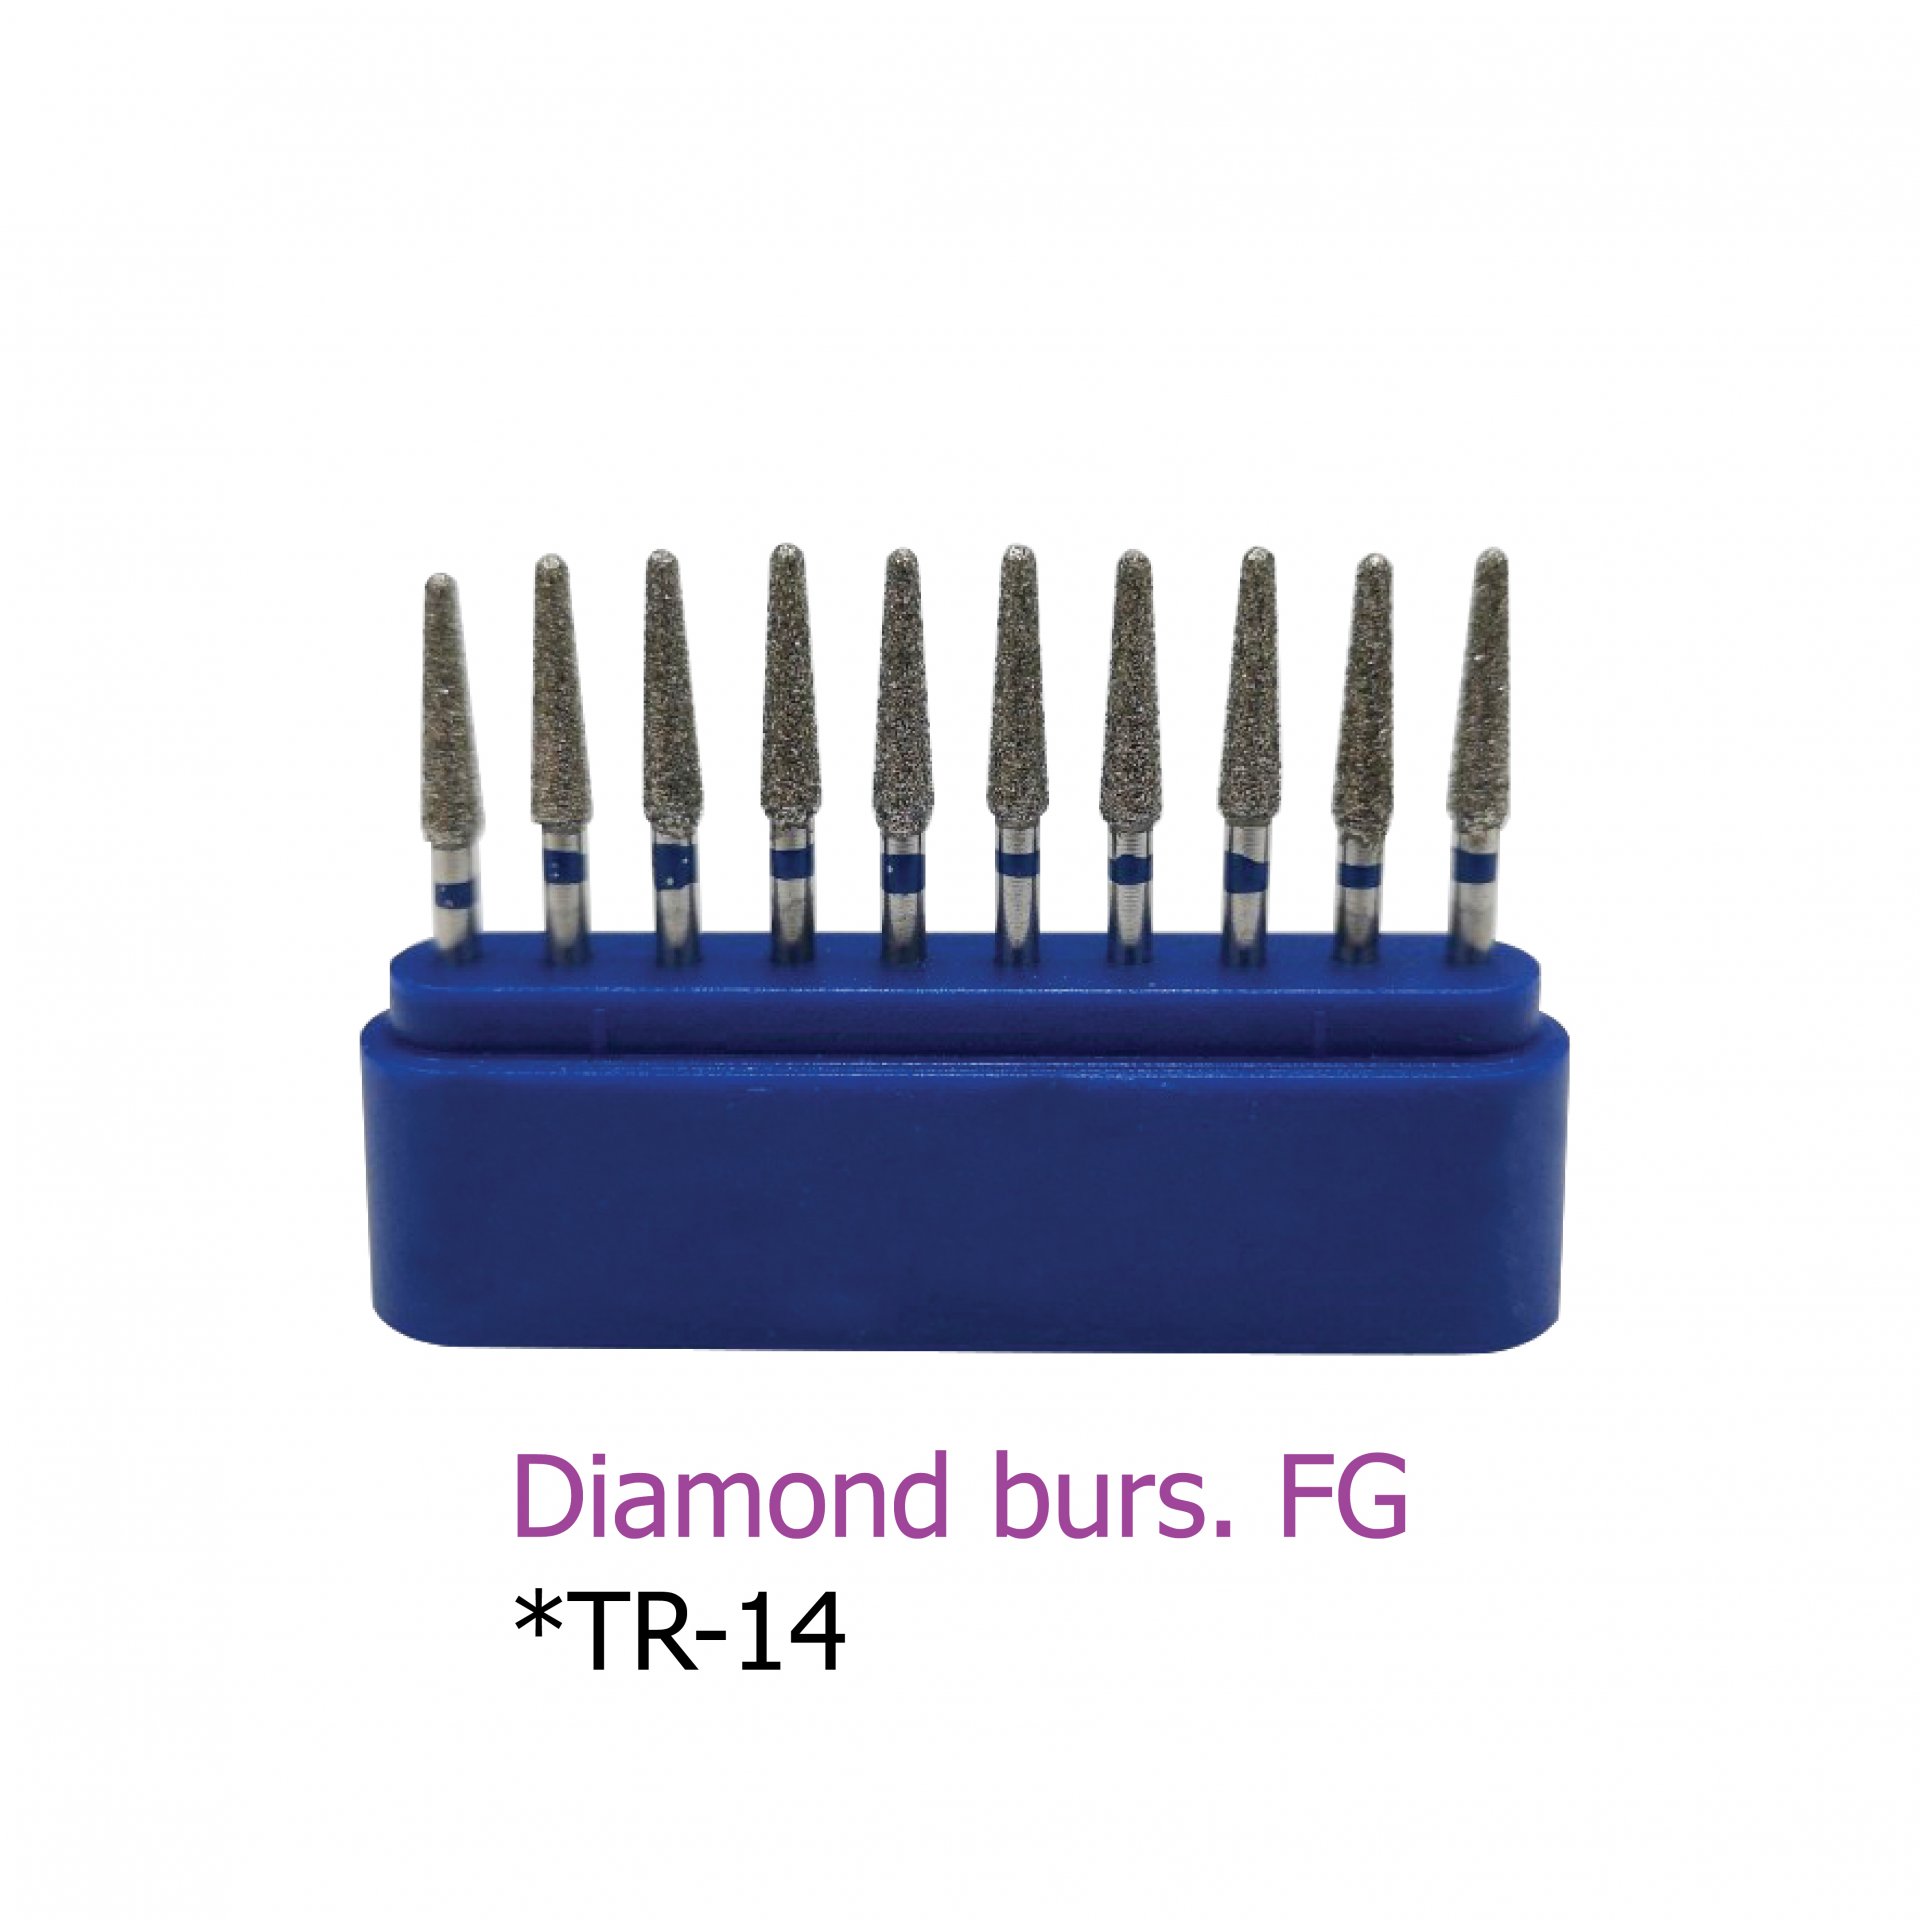 Diamond burs. FG *TR-14